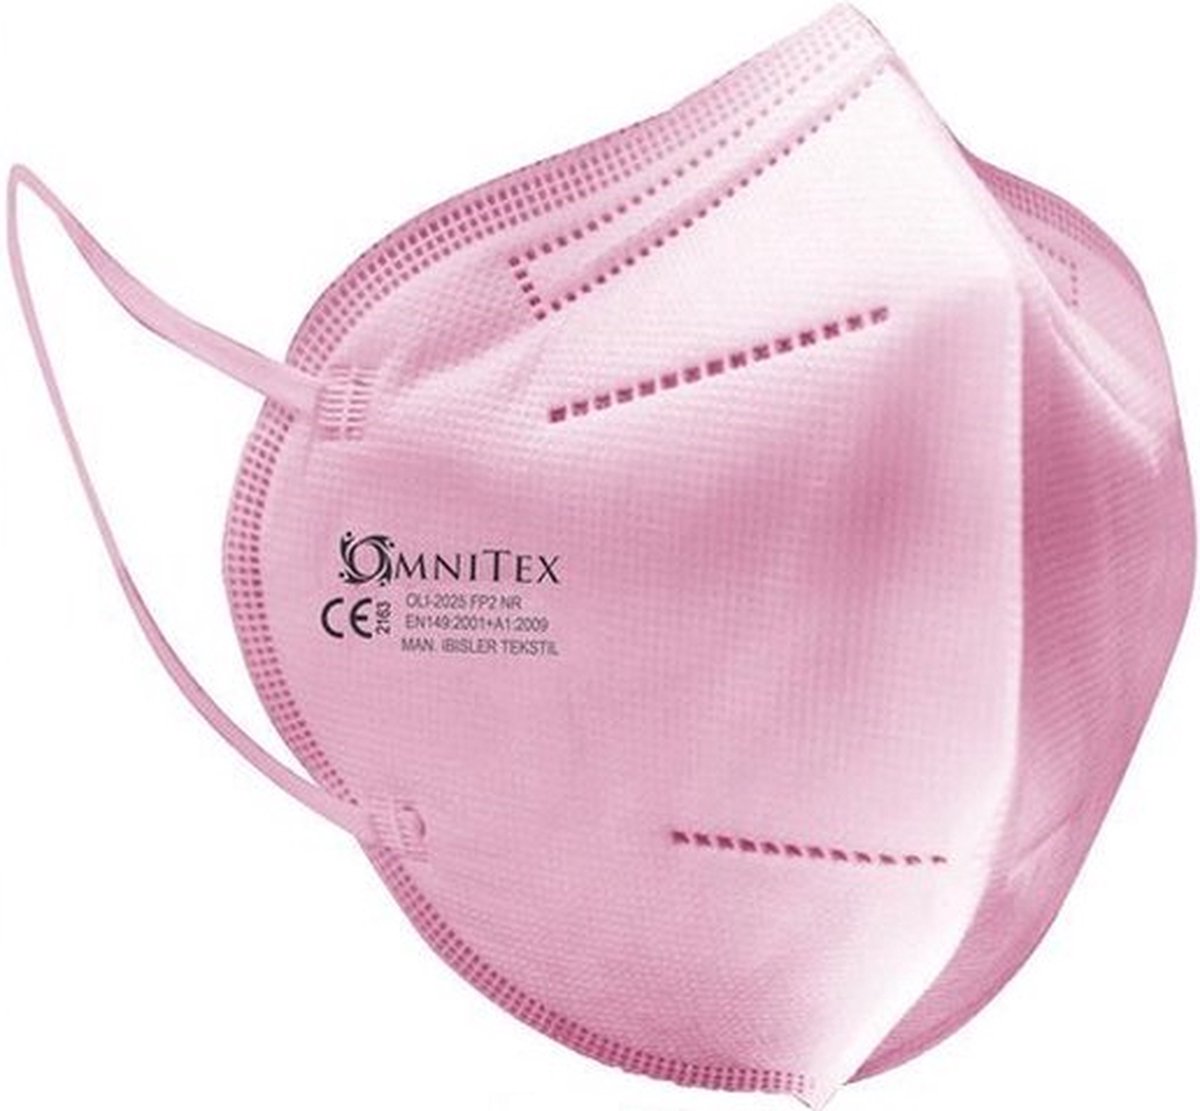 Omnitex FFP2 Roze gezichtsmasker - 10 stuks, individueel verpakt | Hoge filtratie - 5 lagen | EN149 CE-gecertificeerd | + 2-maskerverlengers | Hypoallergeen | Vloeistofbestendig | Oorlussen en aanpasbare neusbrug | + gratis 2-maskerverlengers